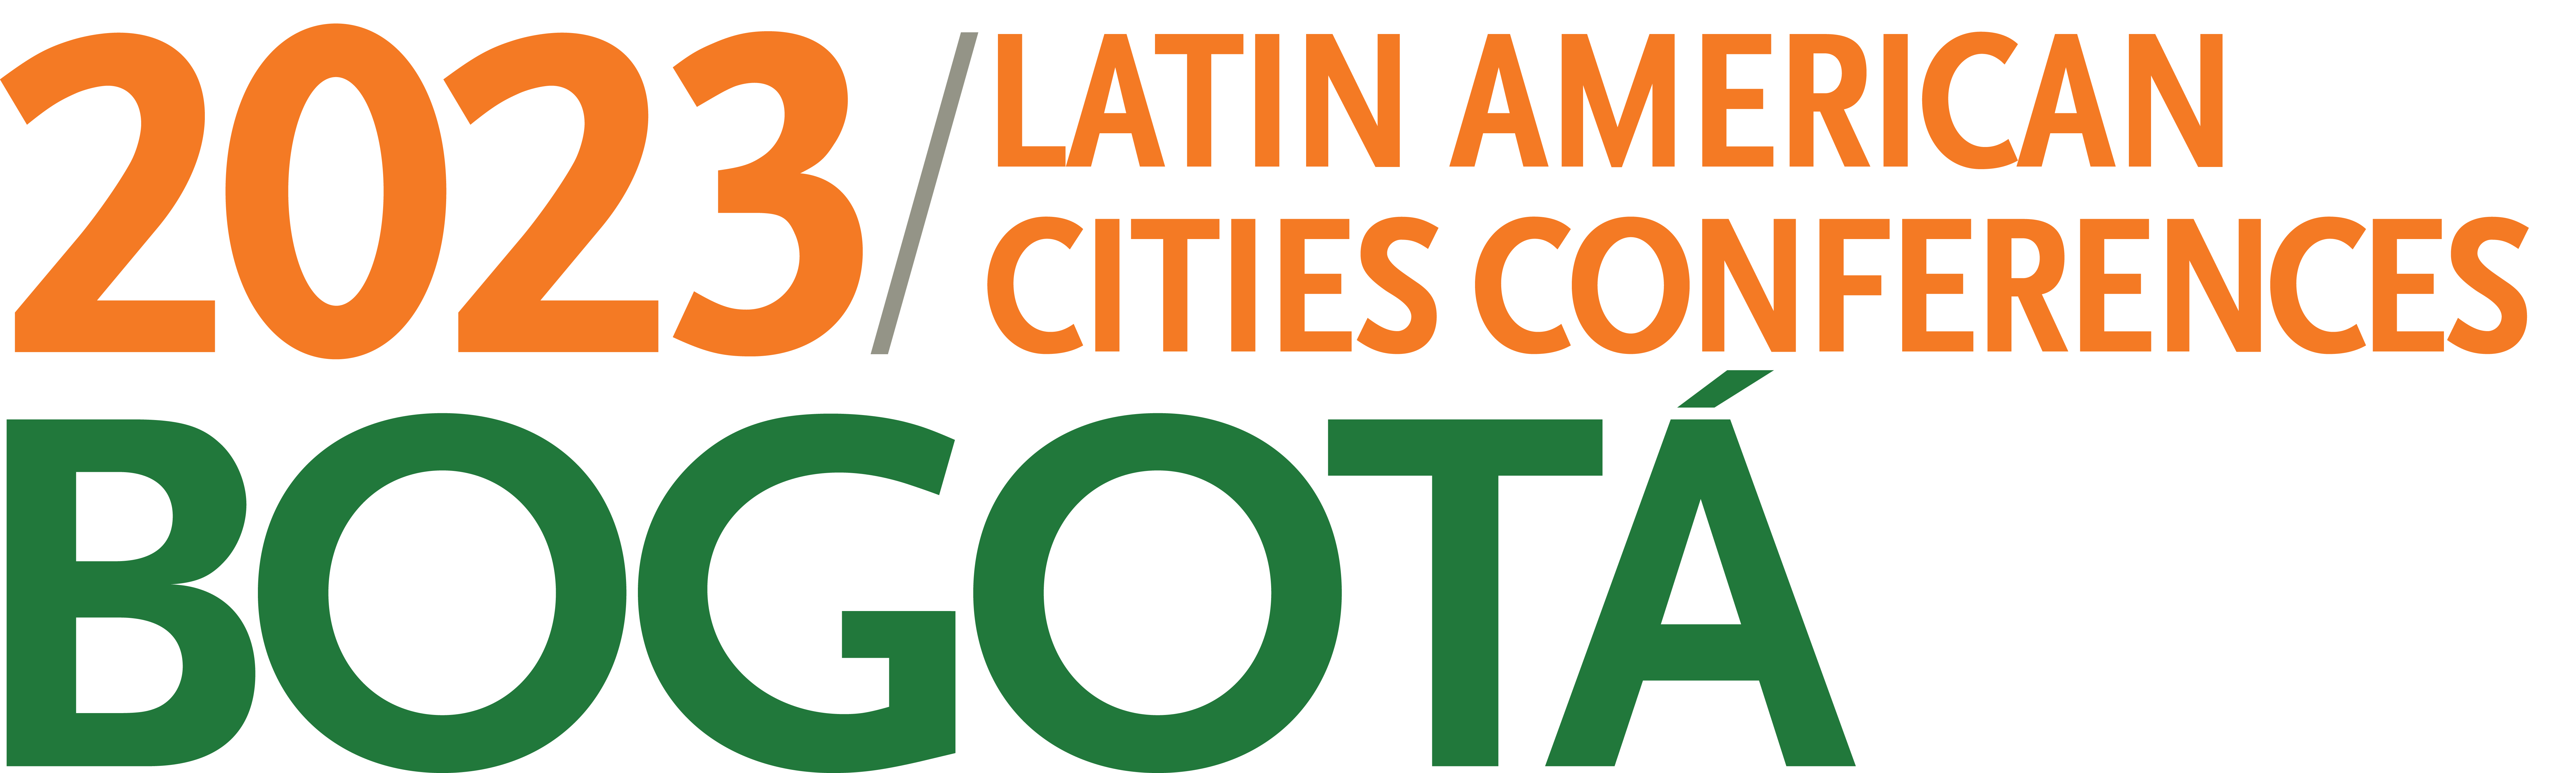 LACC Bogotá 2023 Logo